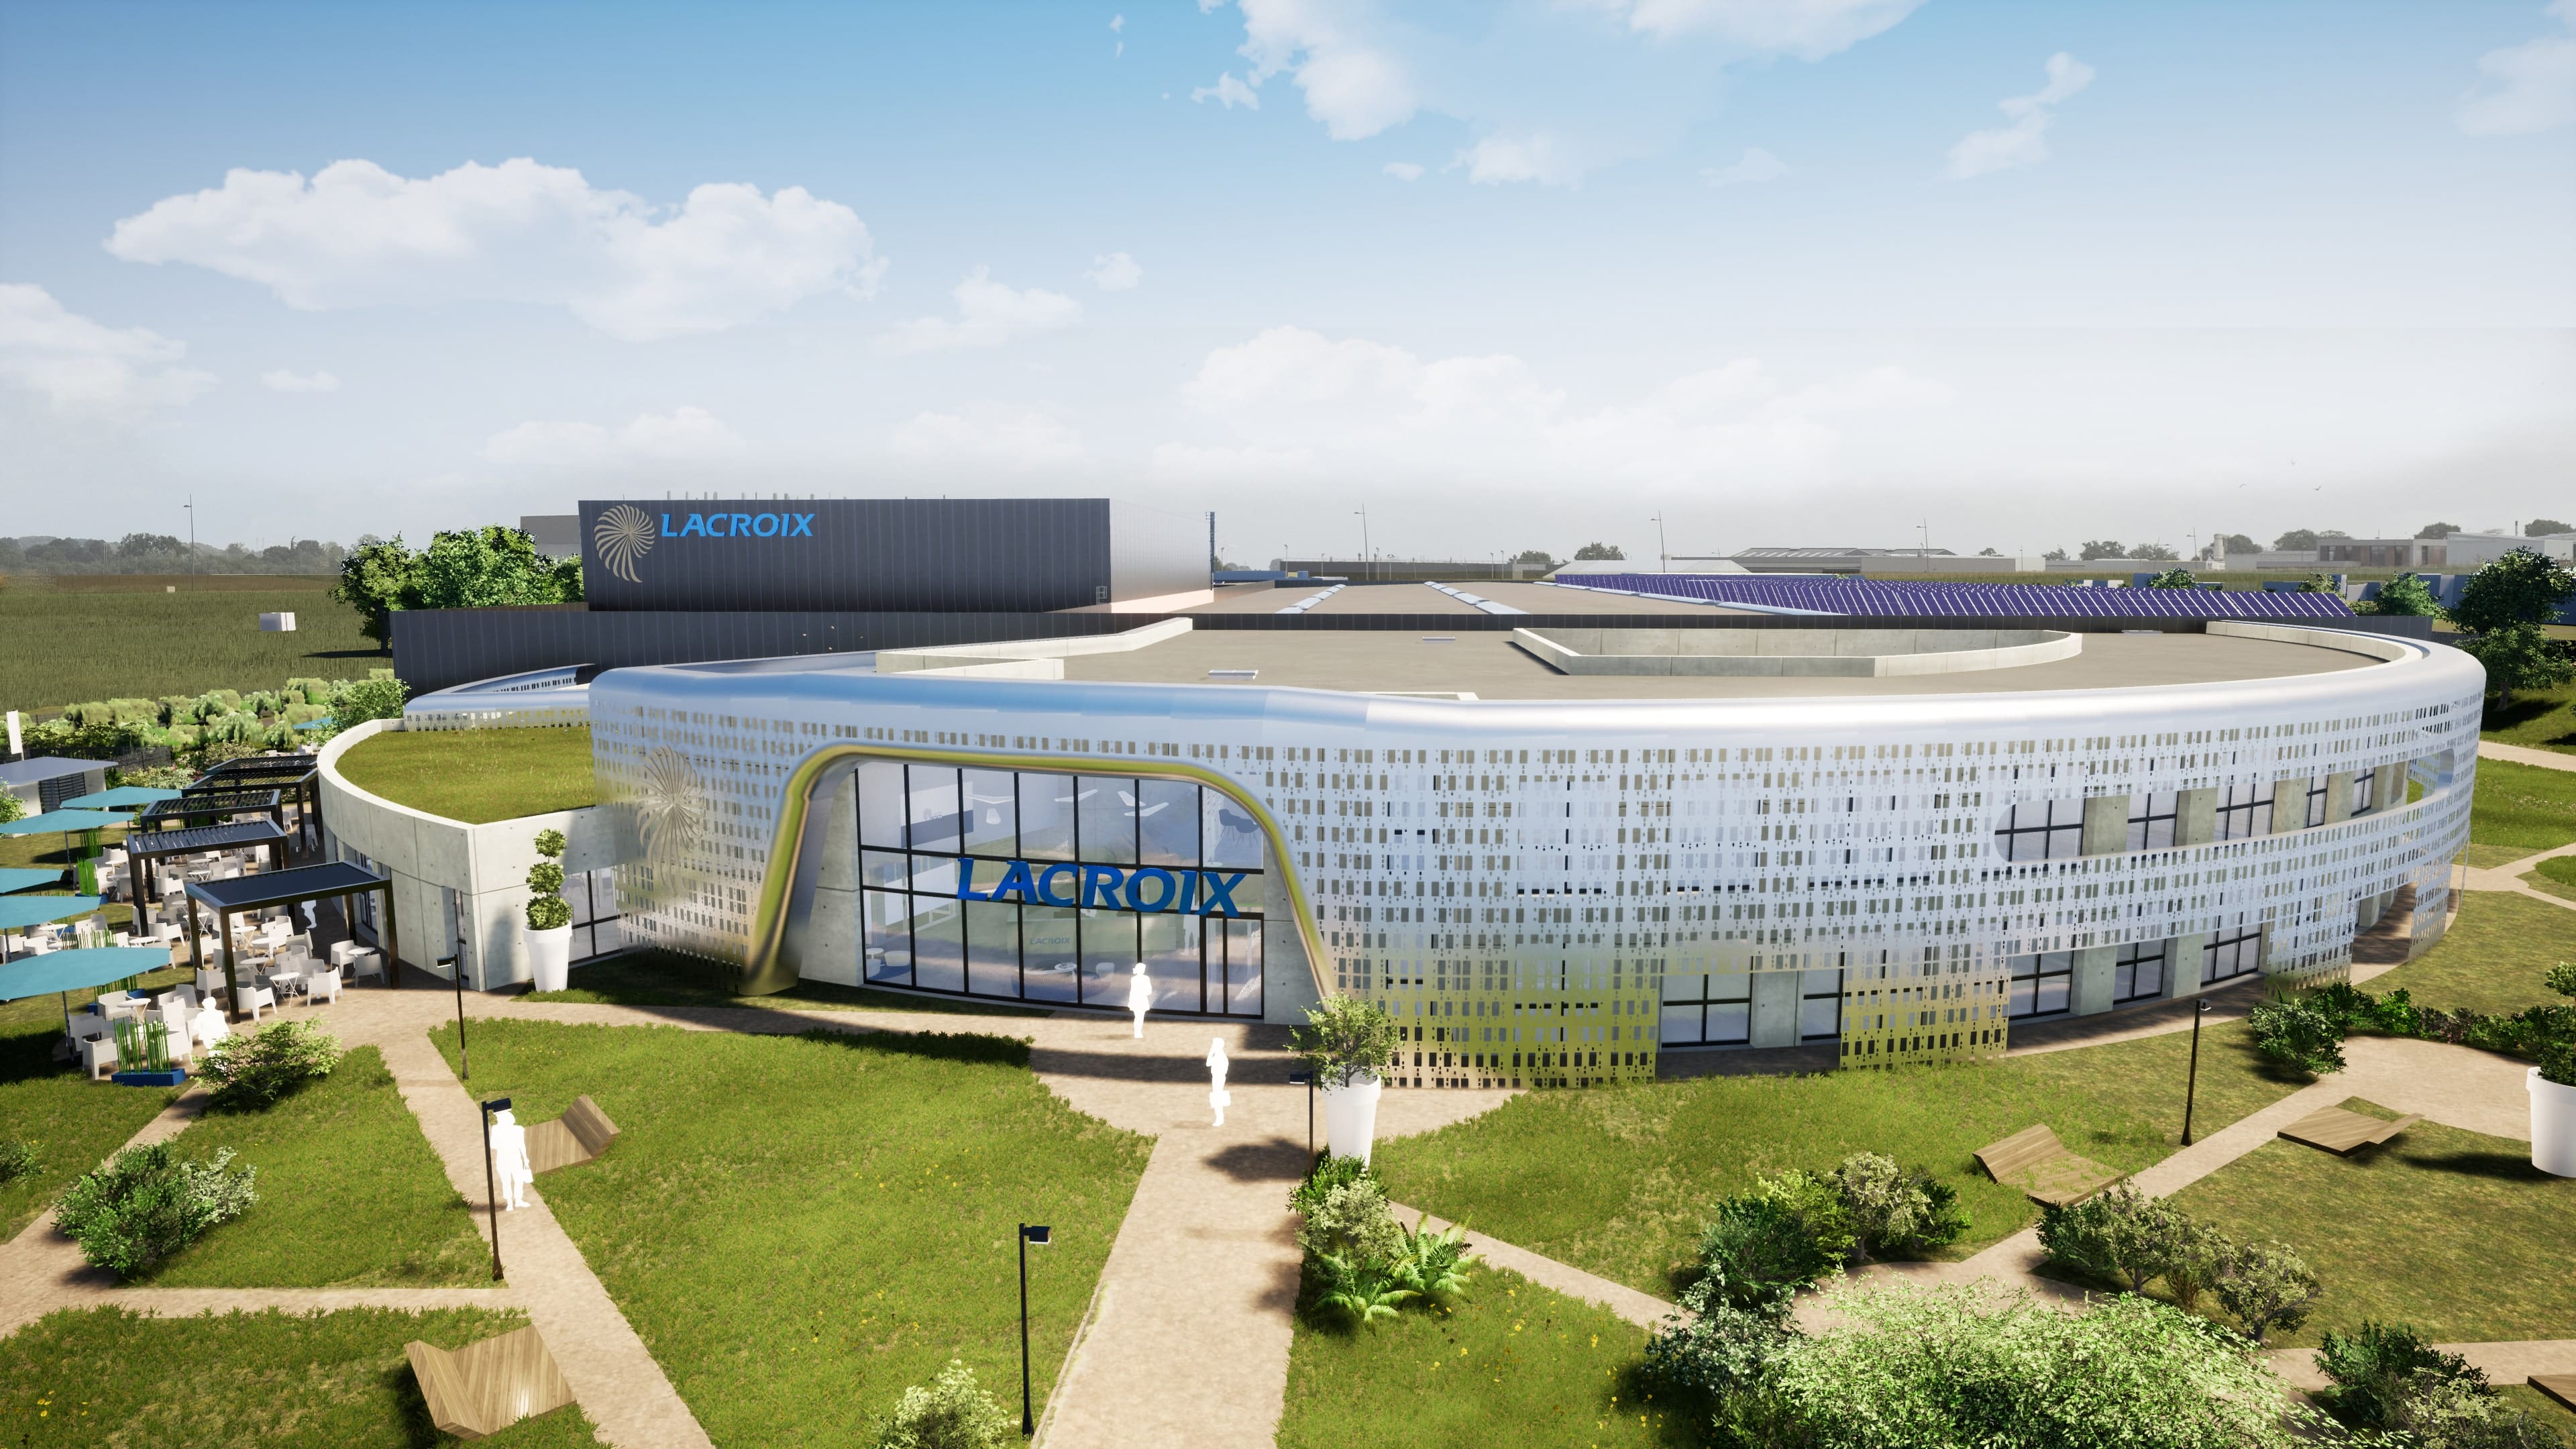 Carte électronique : Lacroix compte sur son usine 4.0 pour approvisionner Airbus, Ledger...